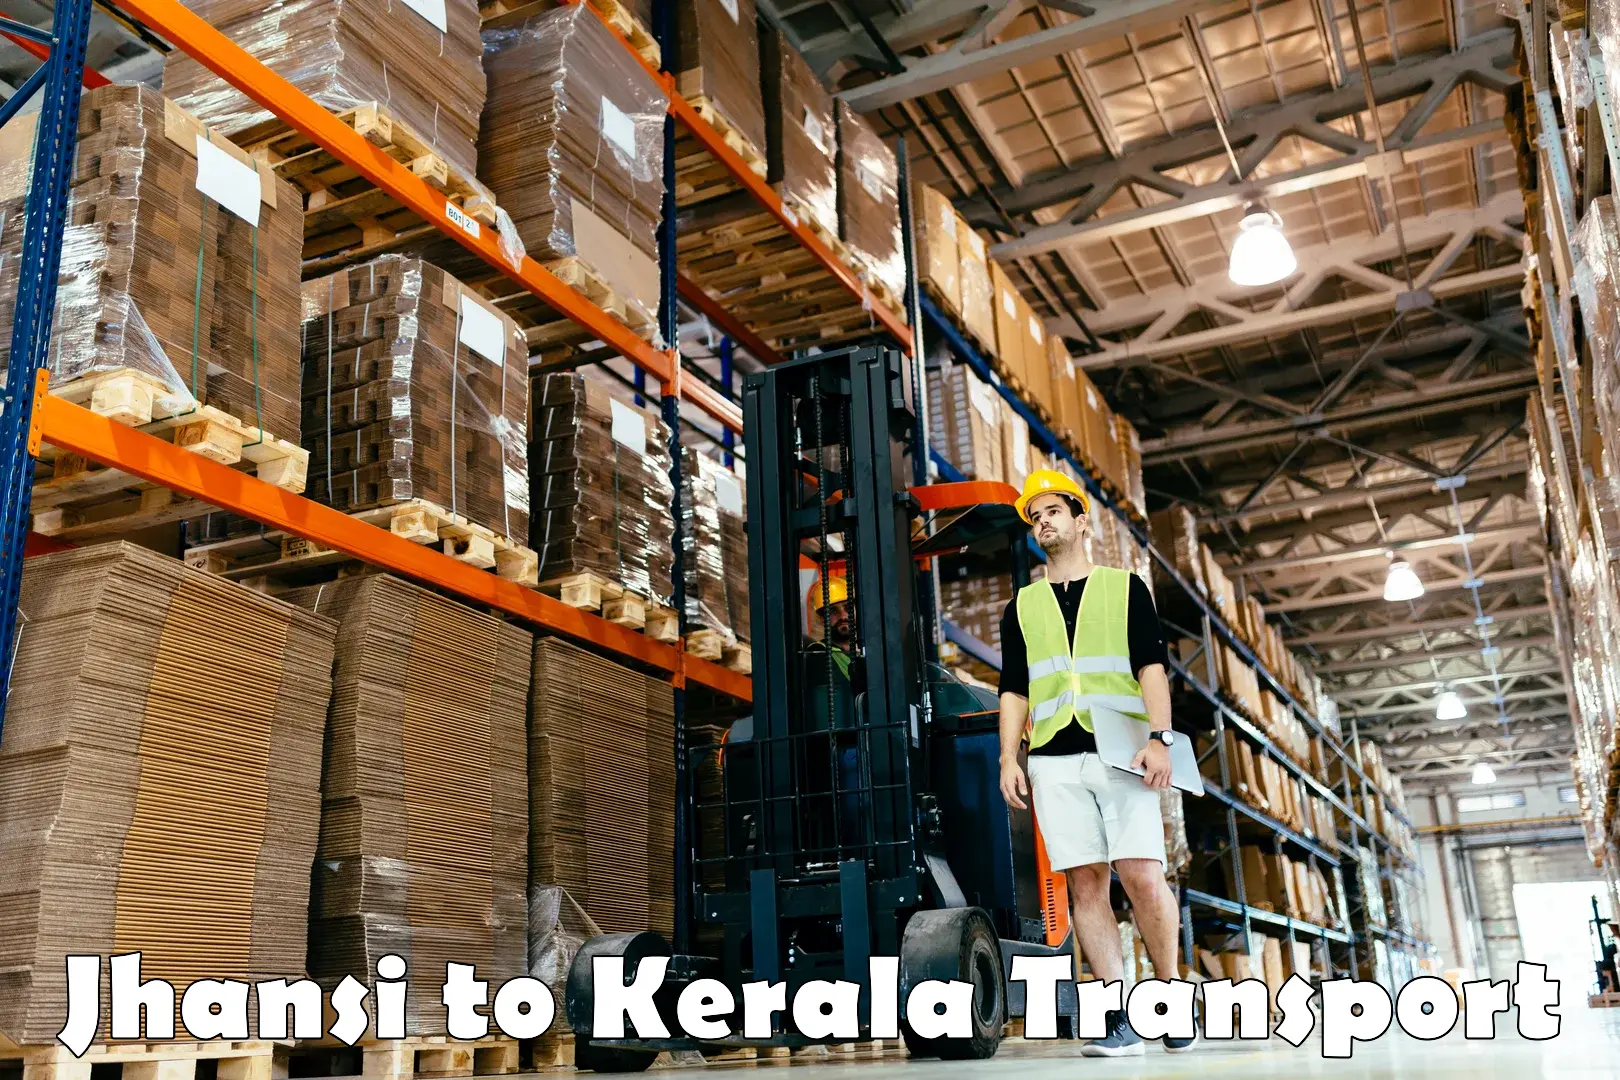 Truck transport companies in India Jhansi to Cherpulassery